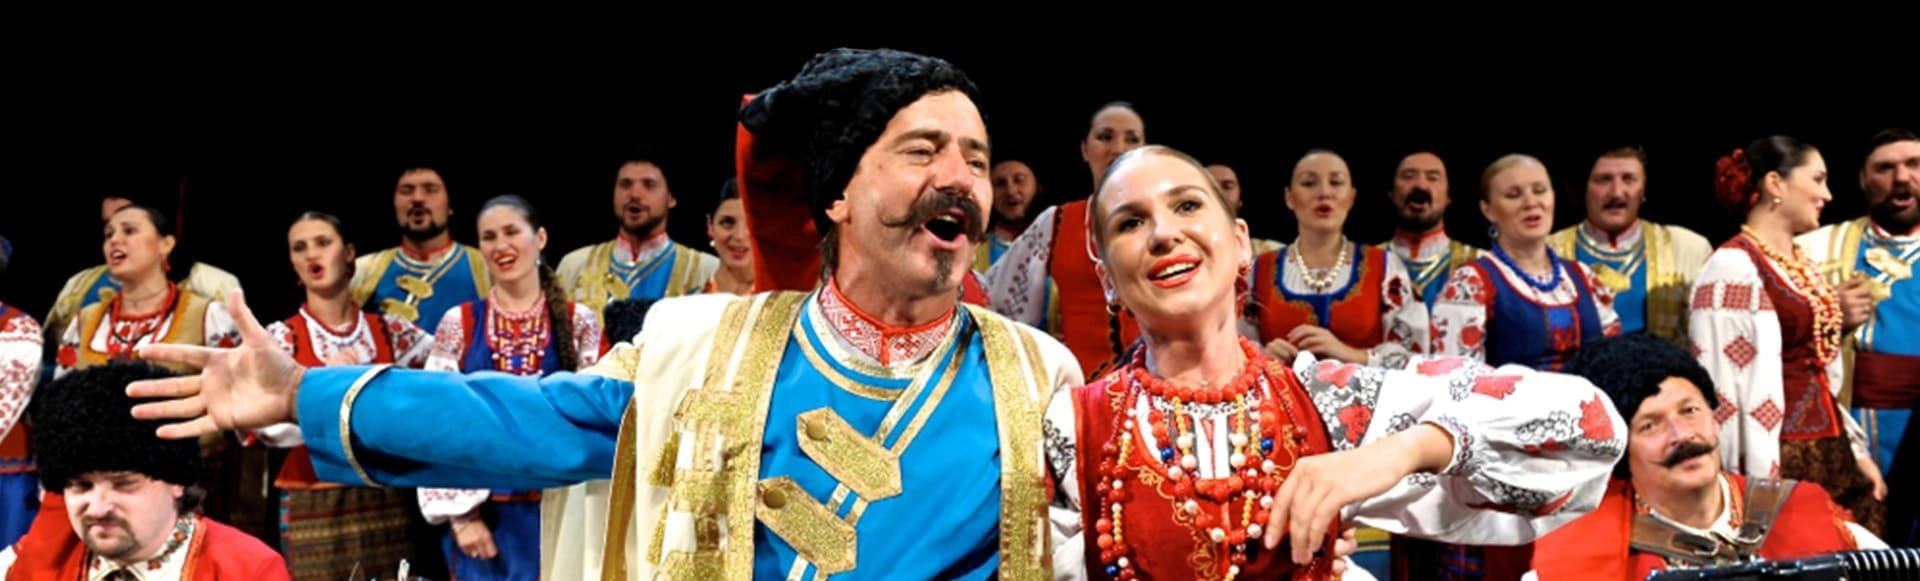 Кубанский казачий хор даст к Кремле два концерта
